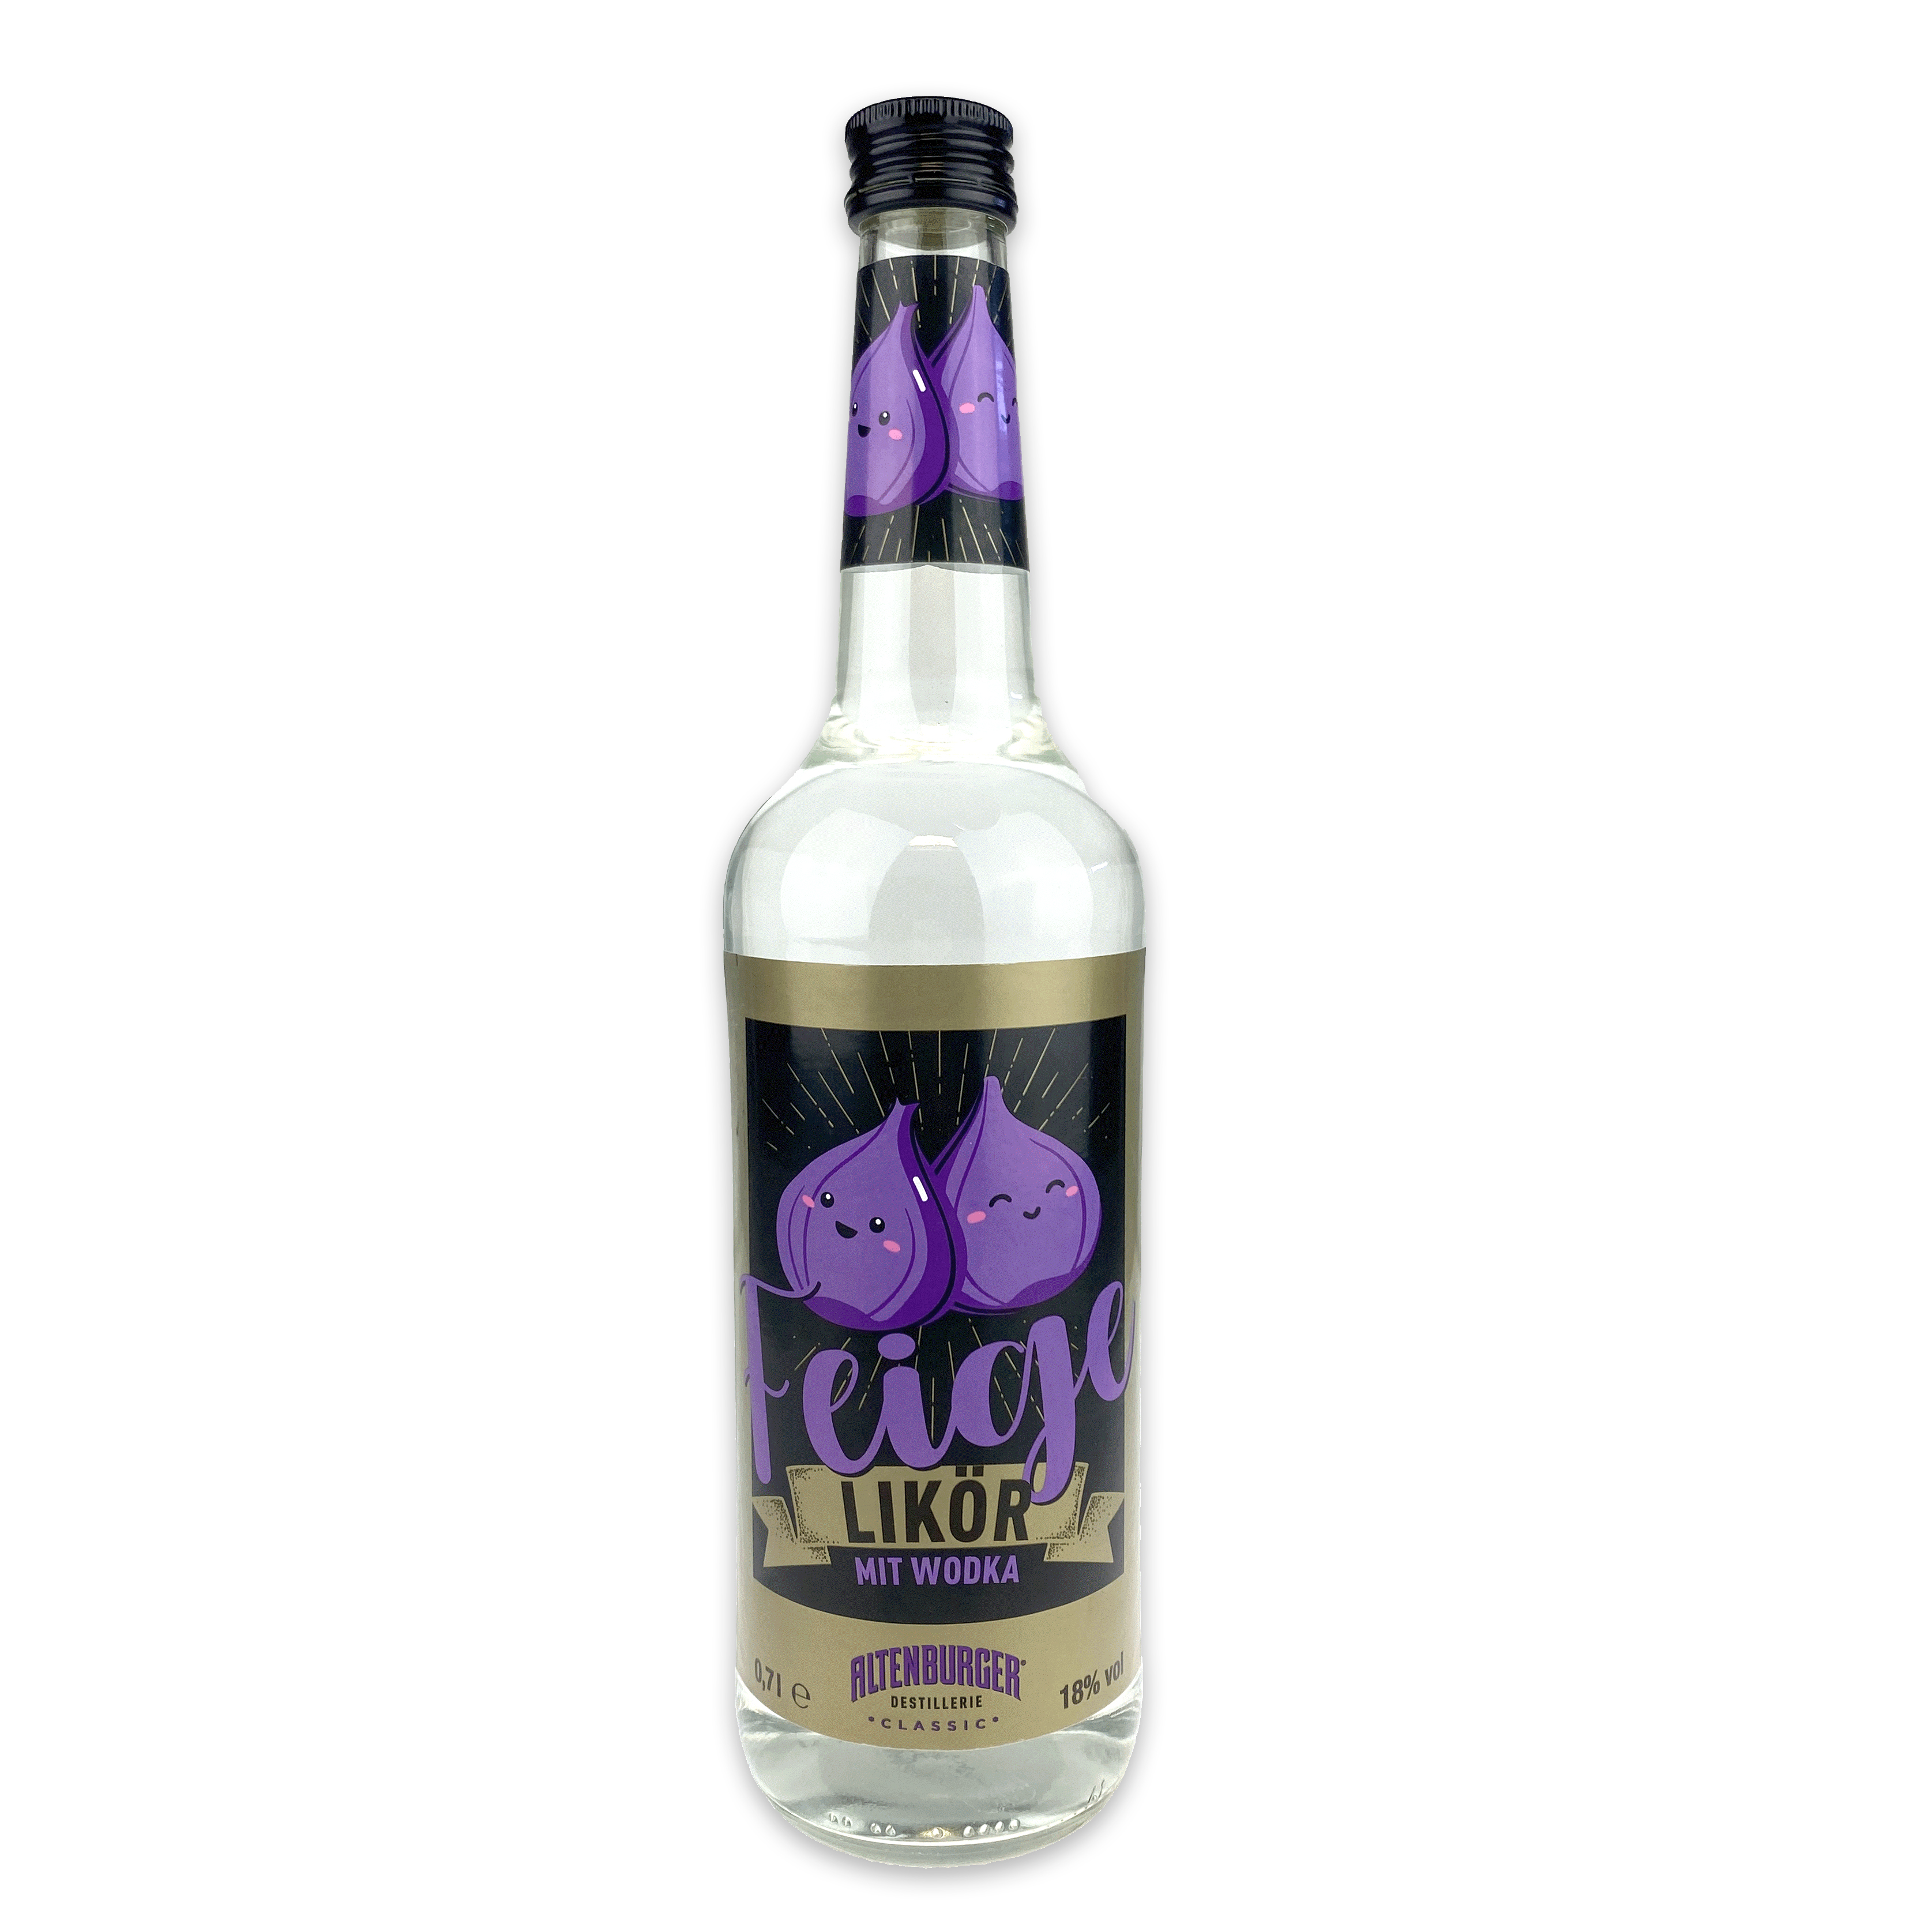 Das Bild zeigt eine Flasche Wodka Feige Likör der Altenburger Destillerie vor weißem Hintergrund.